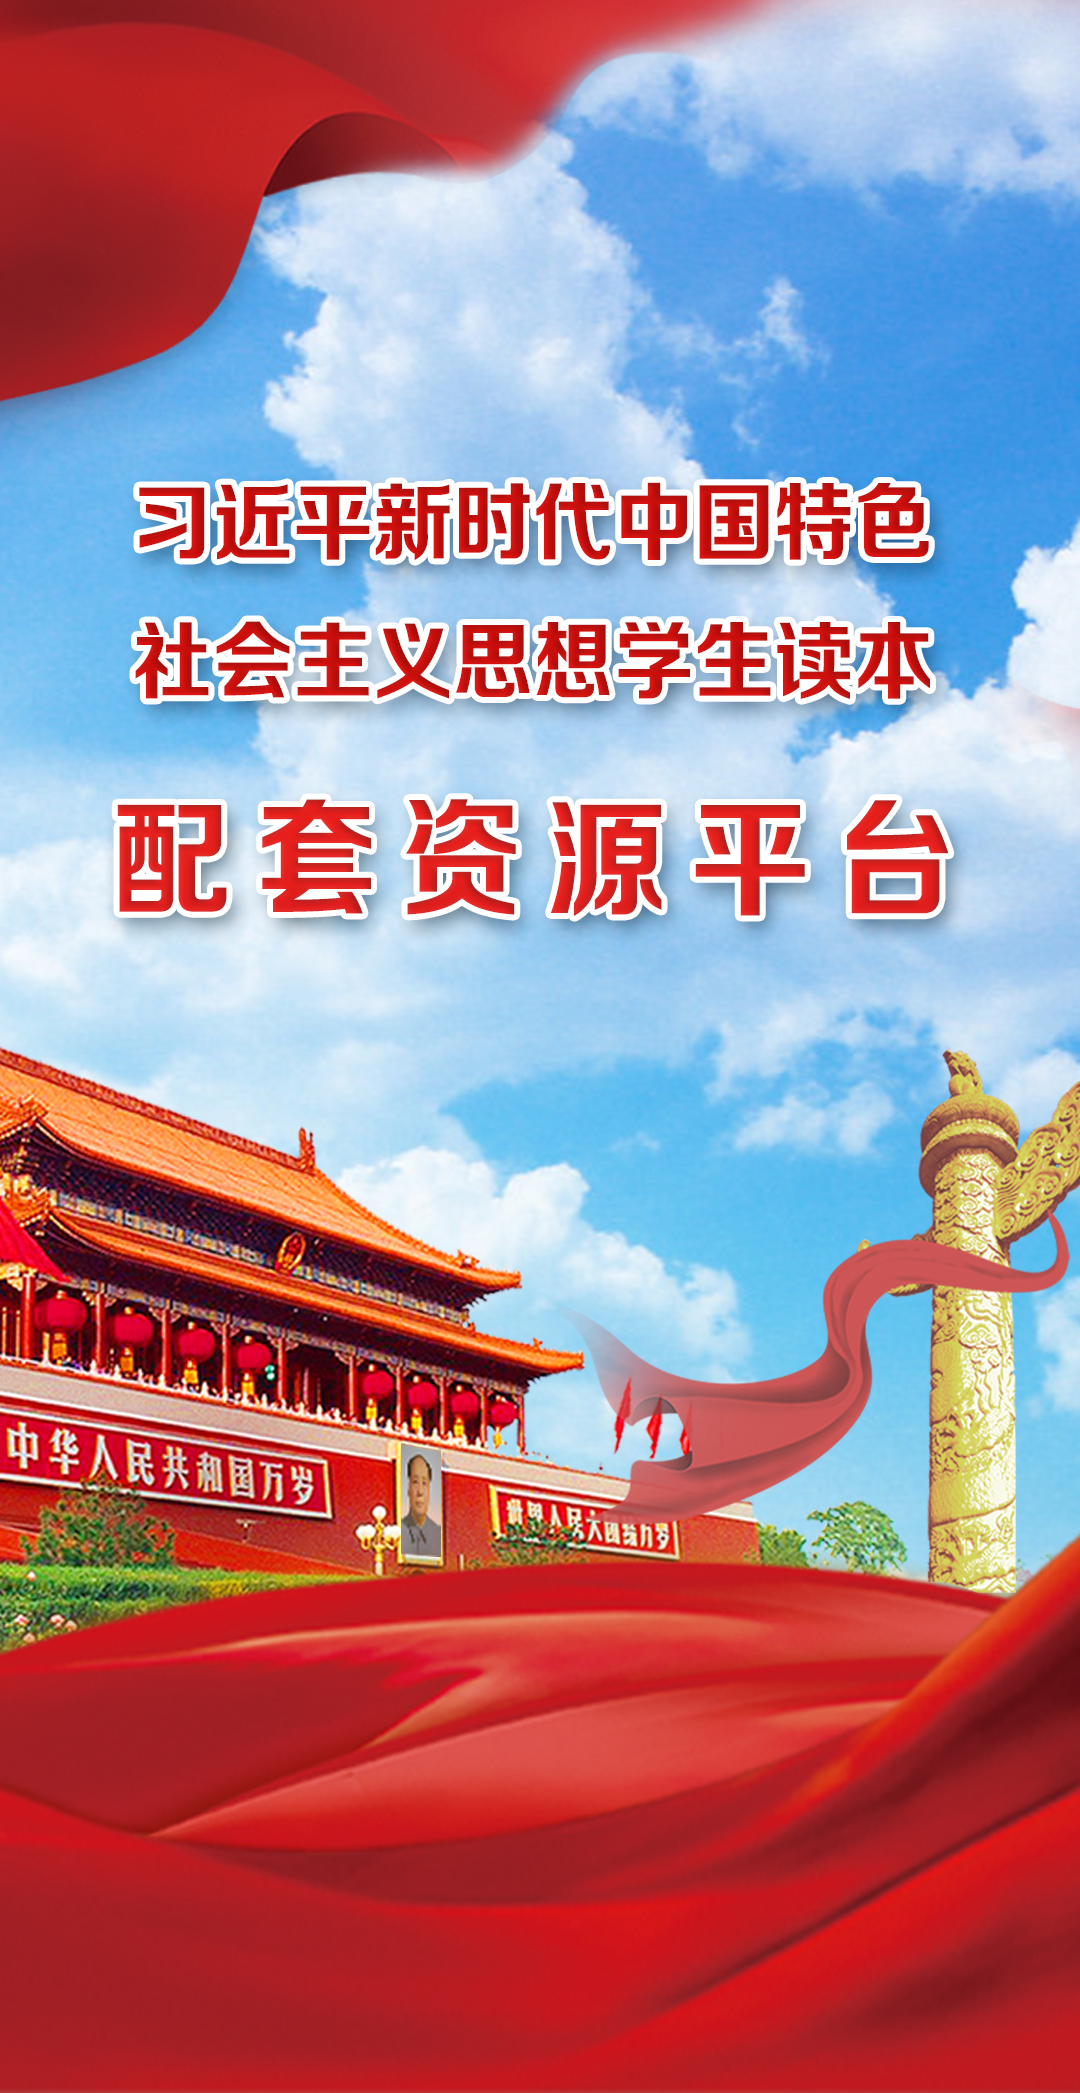 《习近平新时代中国特色社会主义思想学生读本》示范课例视频上线